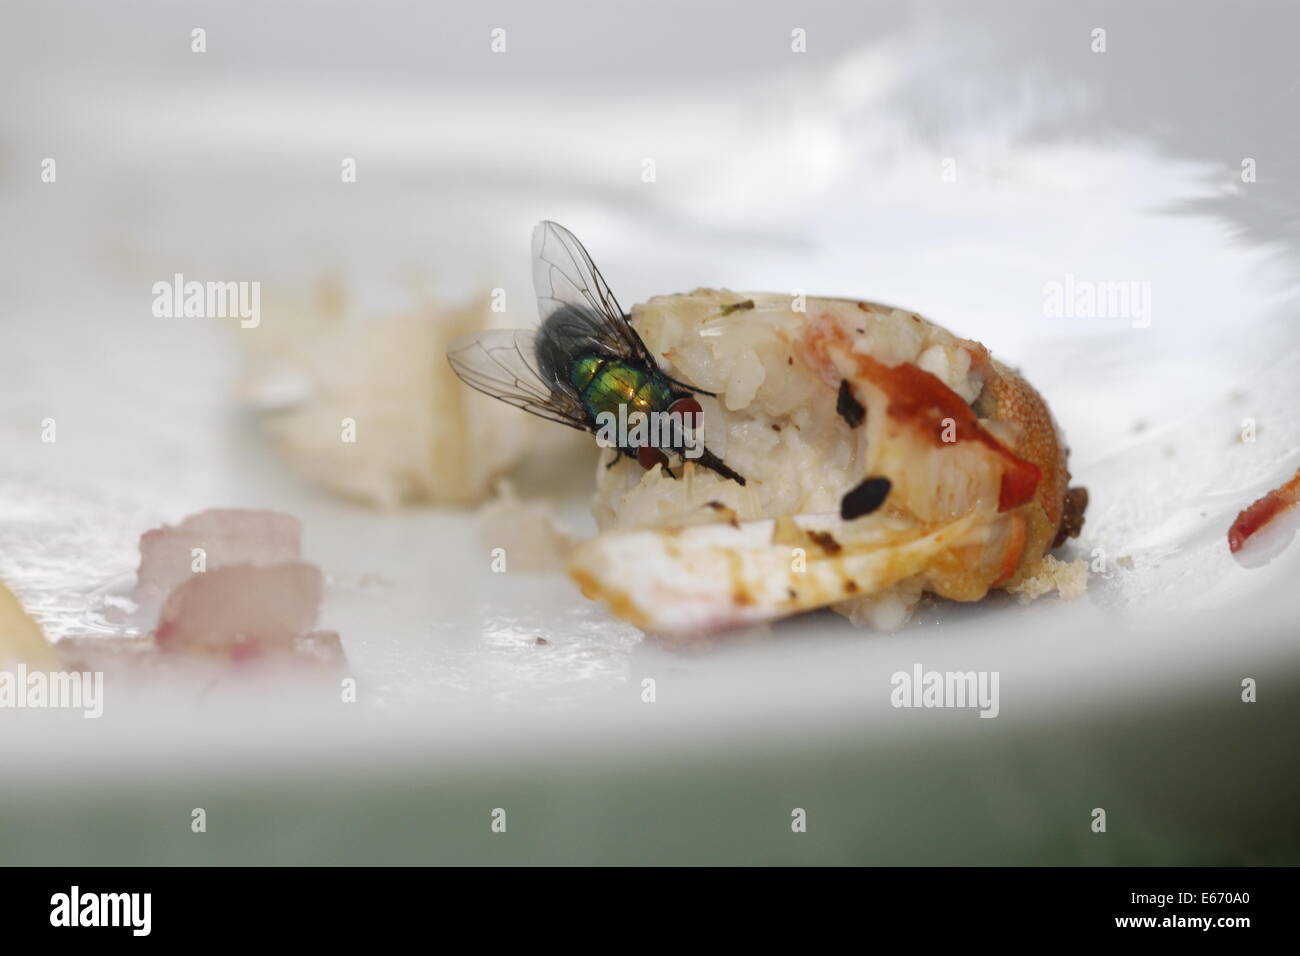 Comida asquerosa, mala higiene, Yuk, un gran greenbottle volar sobre una garra de cangrejo en una placa blanca. Foto de stock